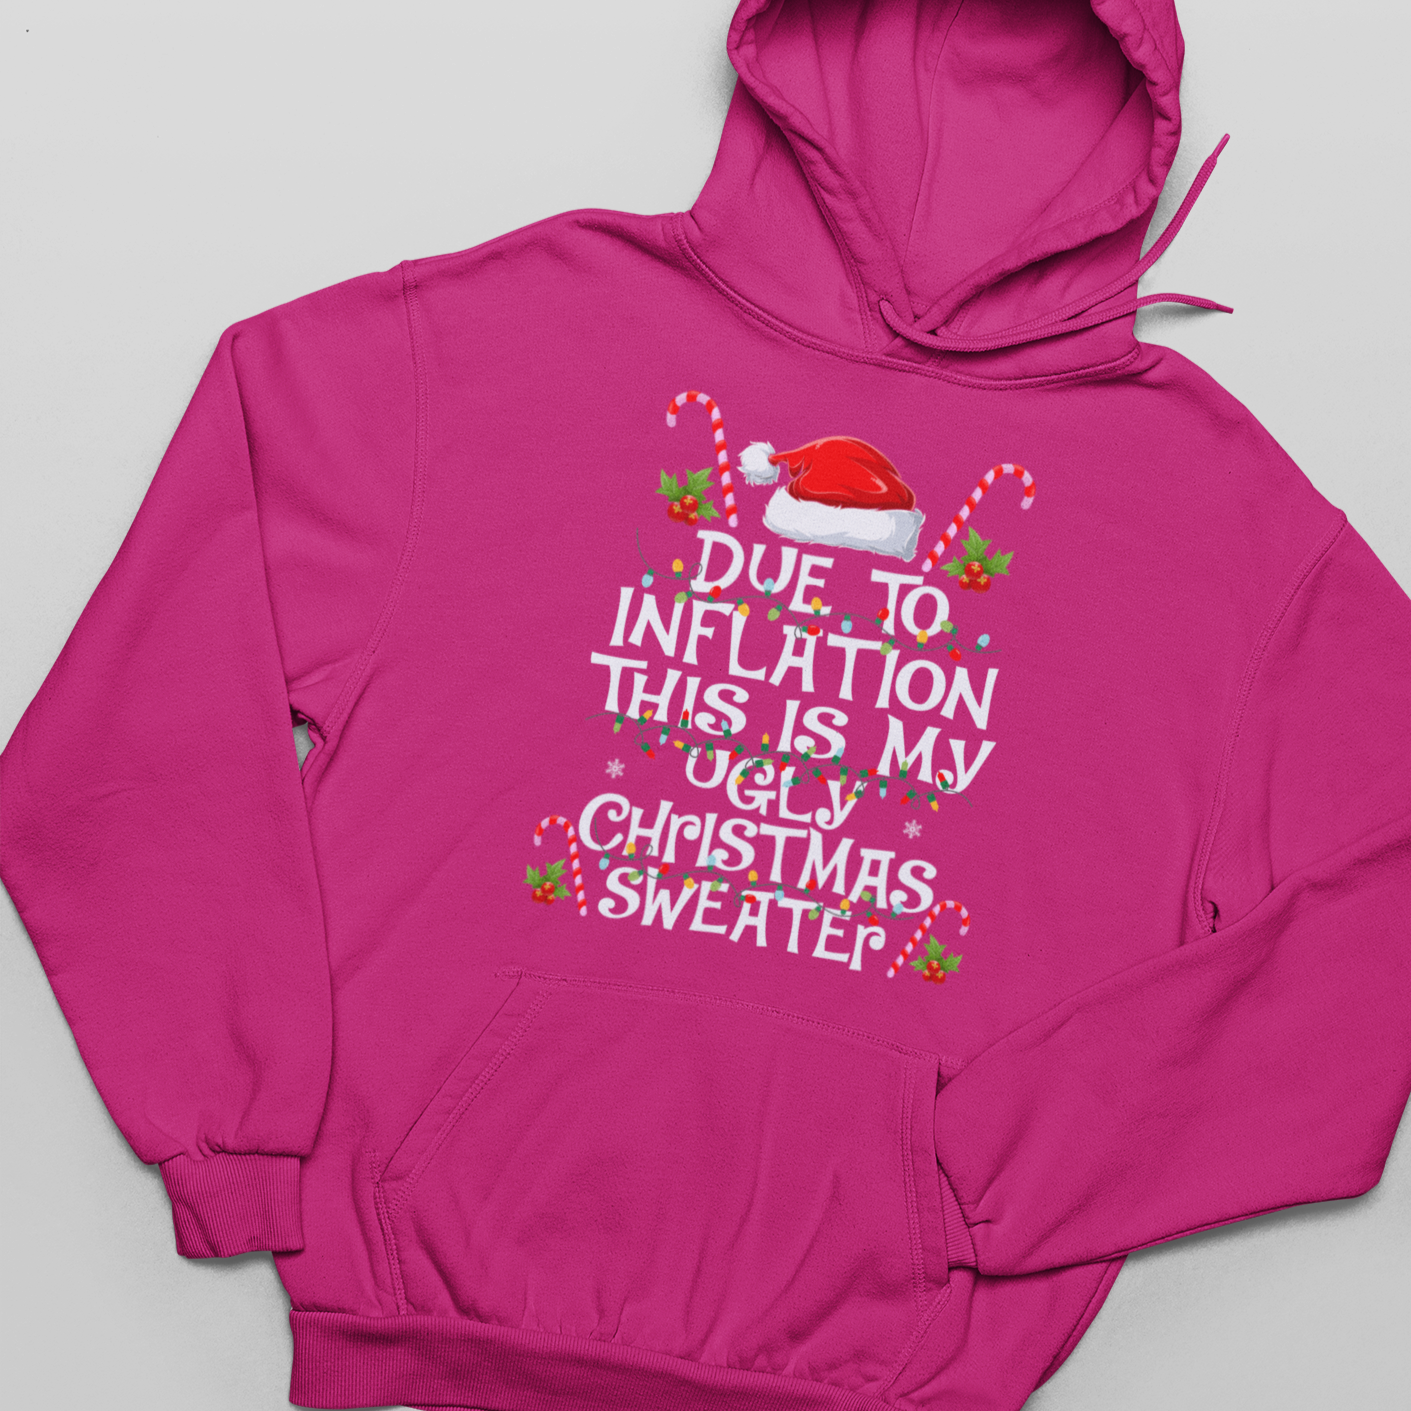 Debido a la inflación, este es mi suéter navideño - Sudadera con capucha unisex